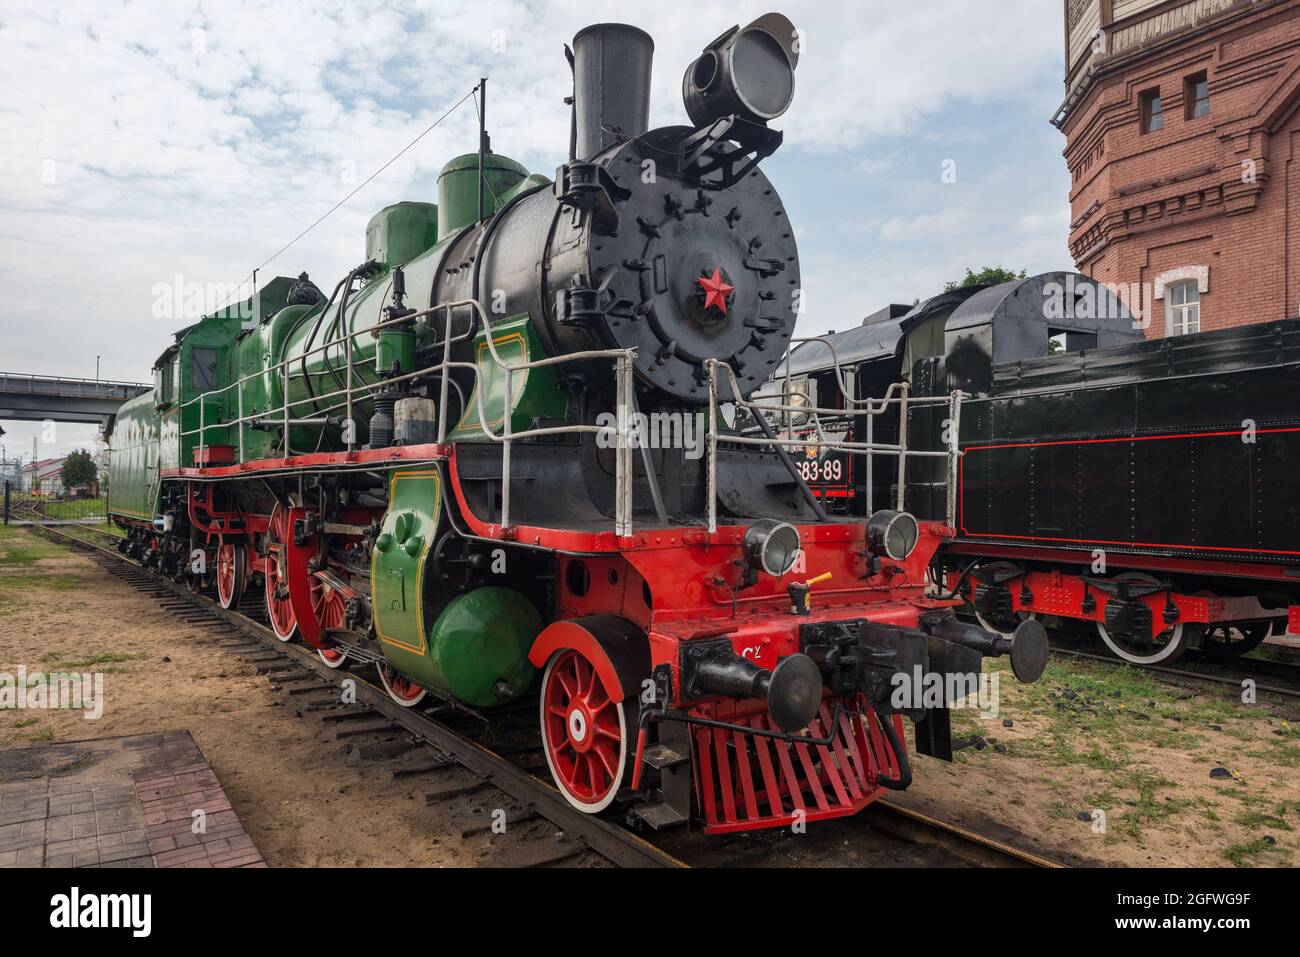 Alte Dampflokomotive fährt am Bahnhof vorbei. Moskauer Eisenbahnmuseum. Weitwinkelaufnahme. Natürliche Farben und Kontrast. Stockfoto